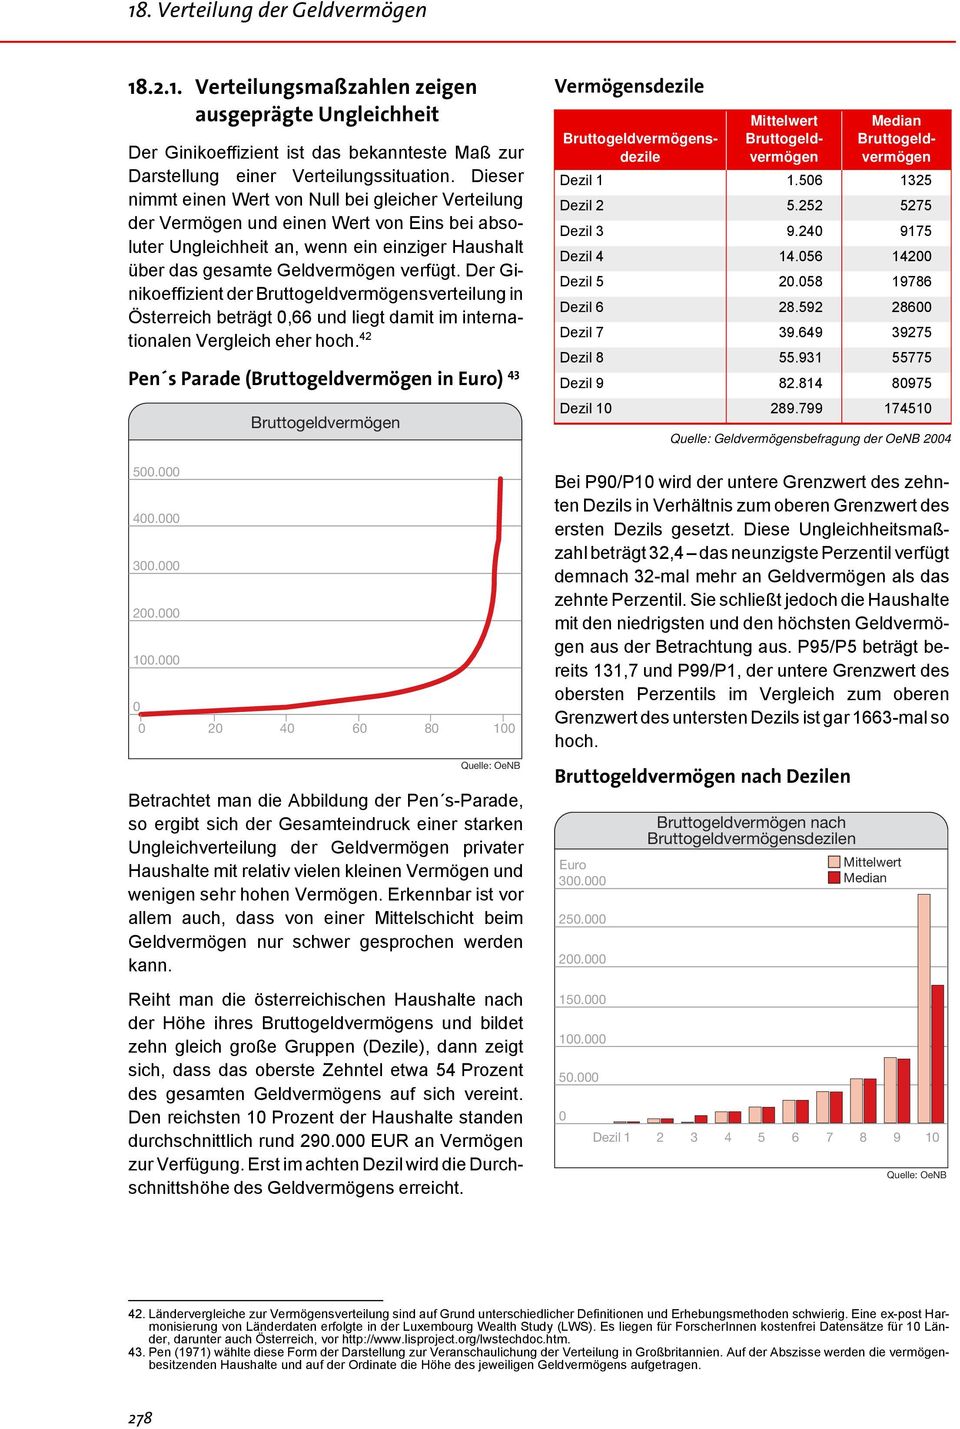 Der Ginikoeffizient der sverteilung in Österreich beträgt 0,66 und liegt damit im internationalen Vergleich eher hoch. 42 Pen s Parade ( in Euro) 43 500.000 400.000 300.000 200.000 100.